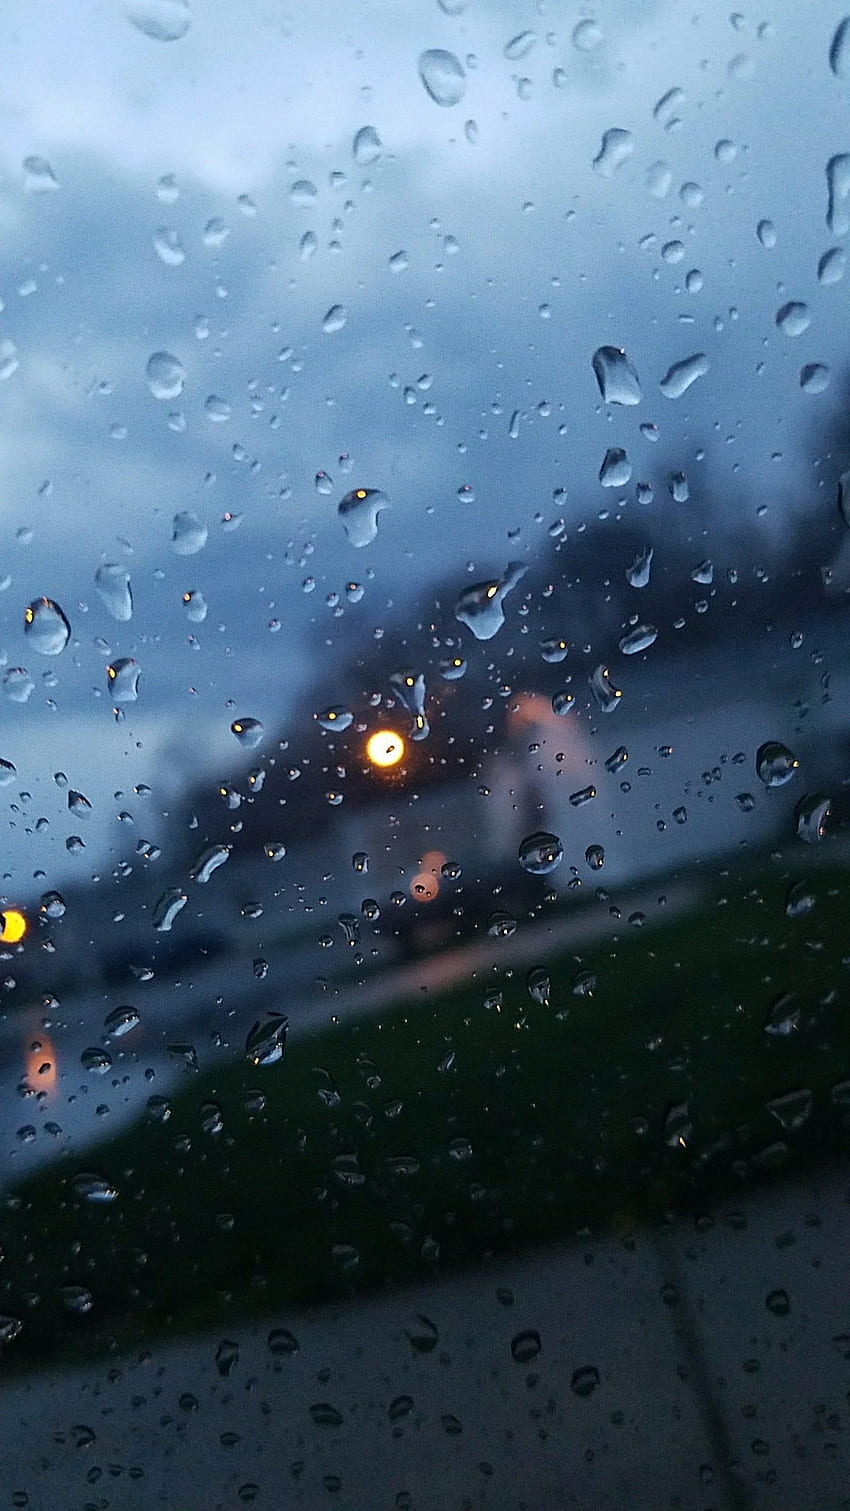 zrobione przez okno kierowcy w deszczowy dzień. iPhone X — iPhone X, deszcz na oknie Tapeta na telefon HD